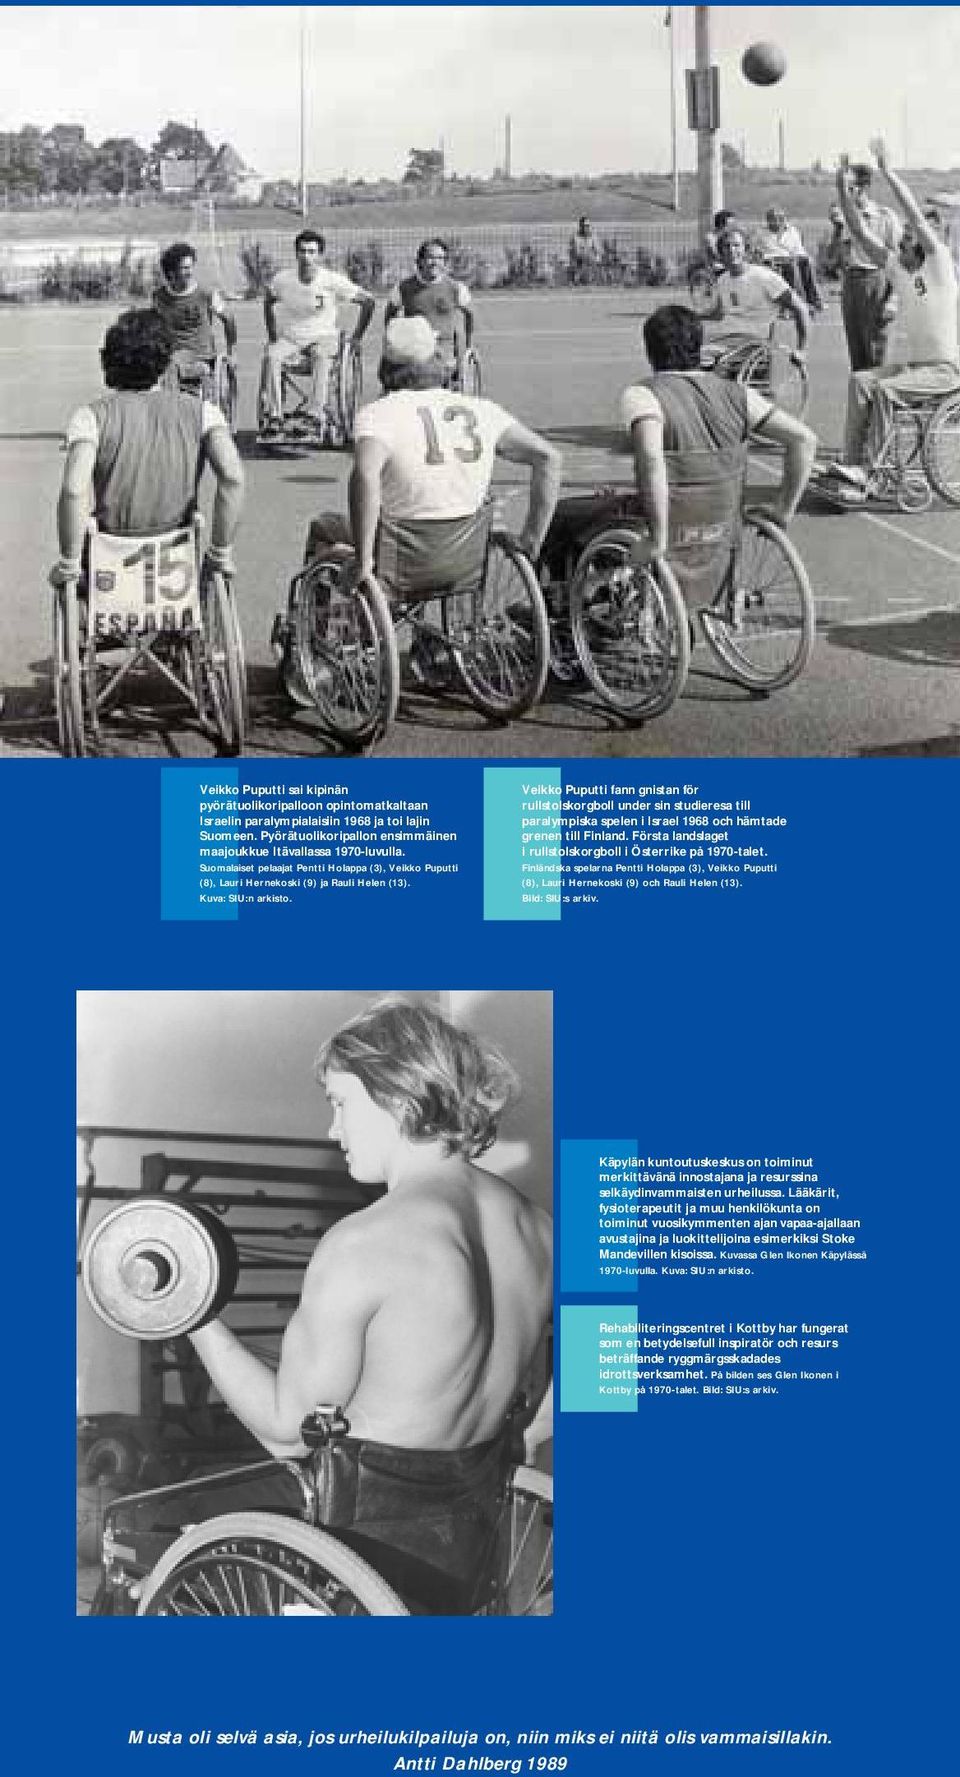 Veikko Puputti fann gnistan för rullstolskorgboll under sin studieresa till paralympiska spelen i Israel 1968 och hämtade grenen till Finland.